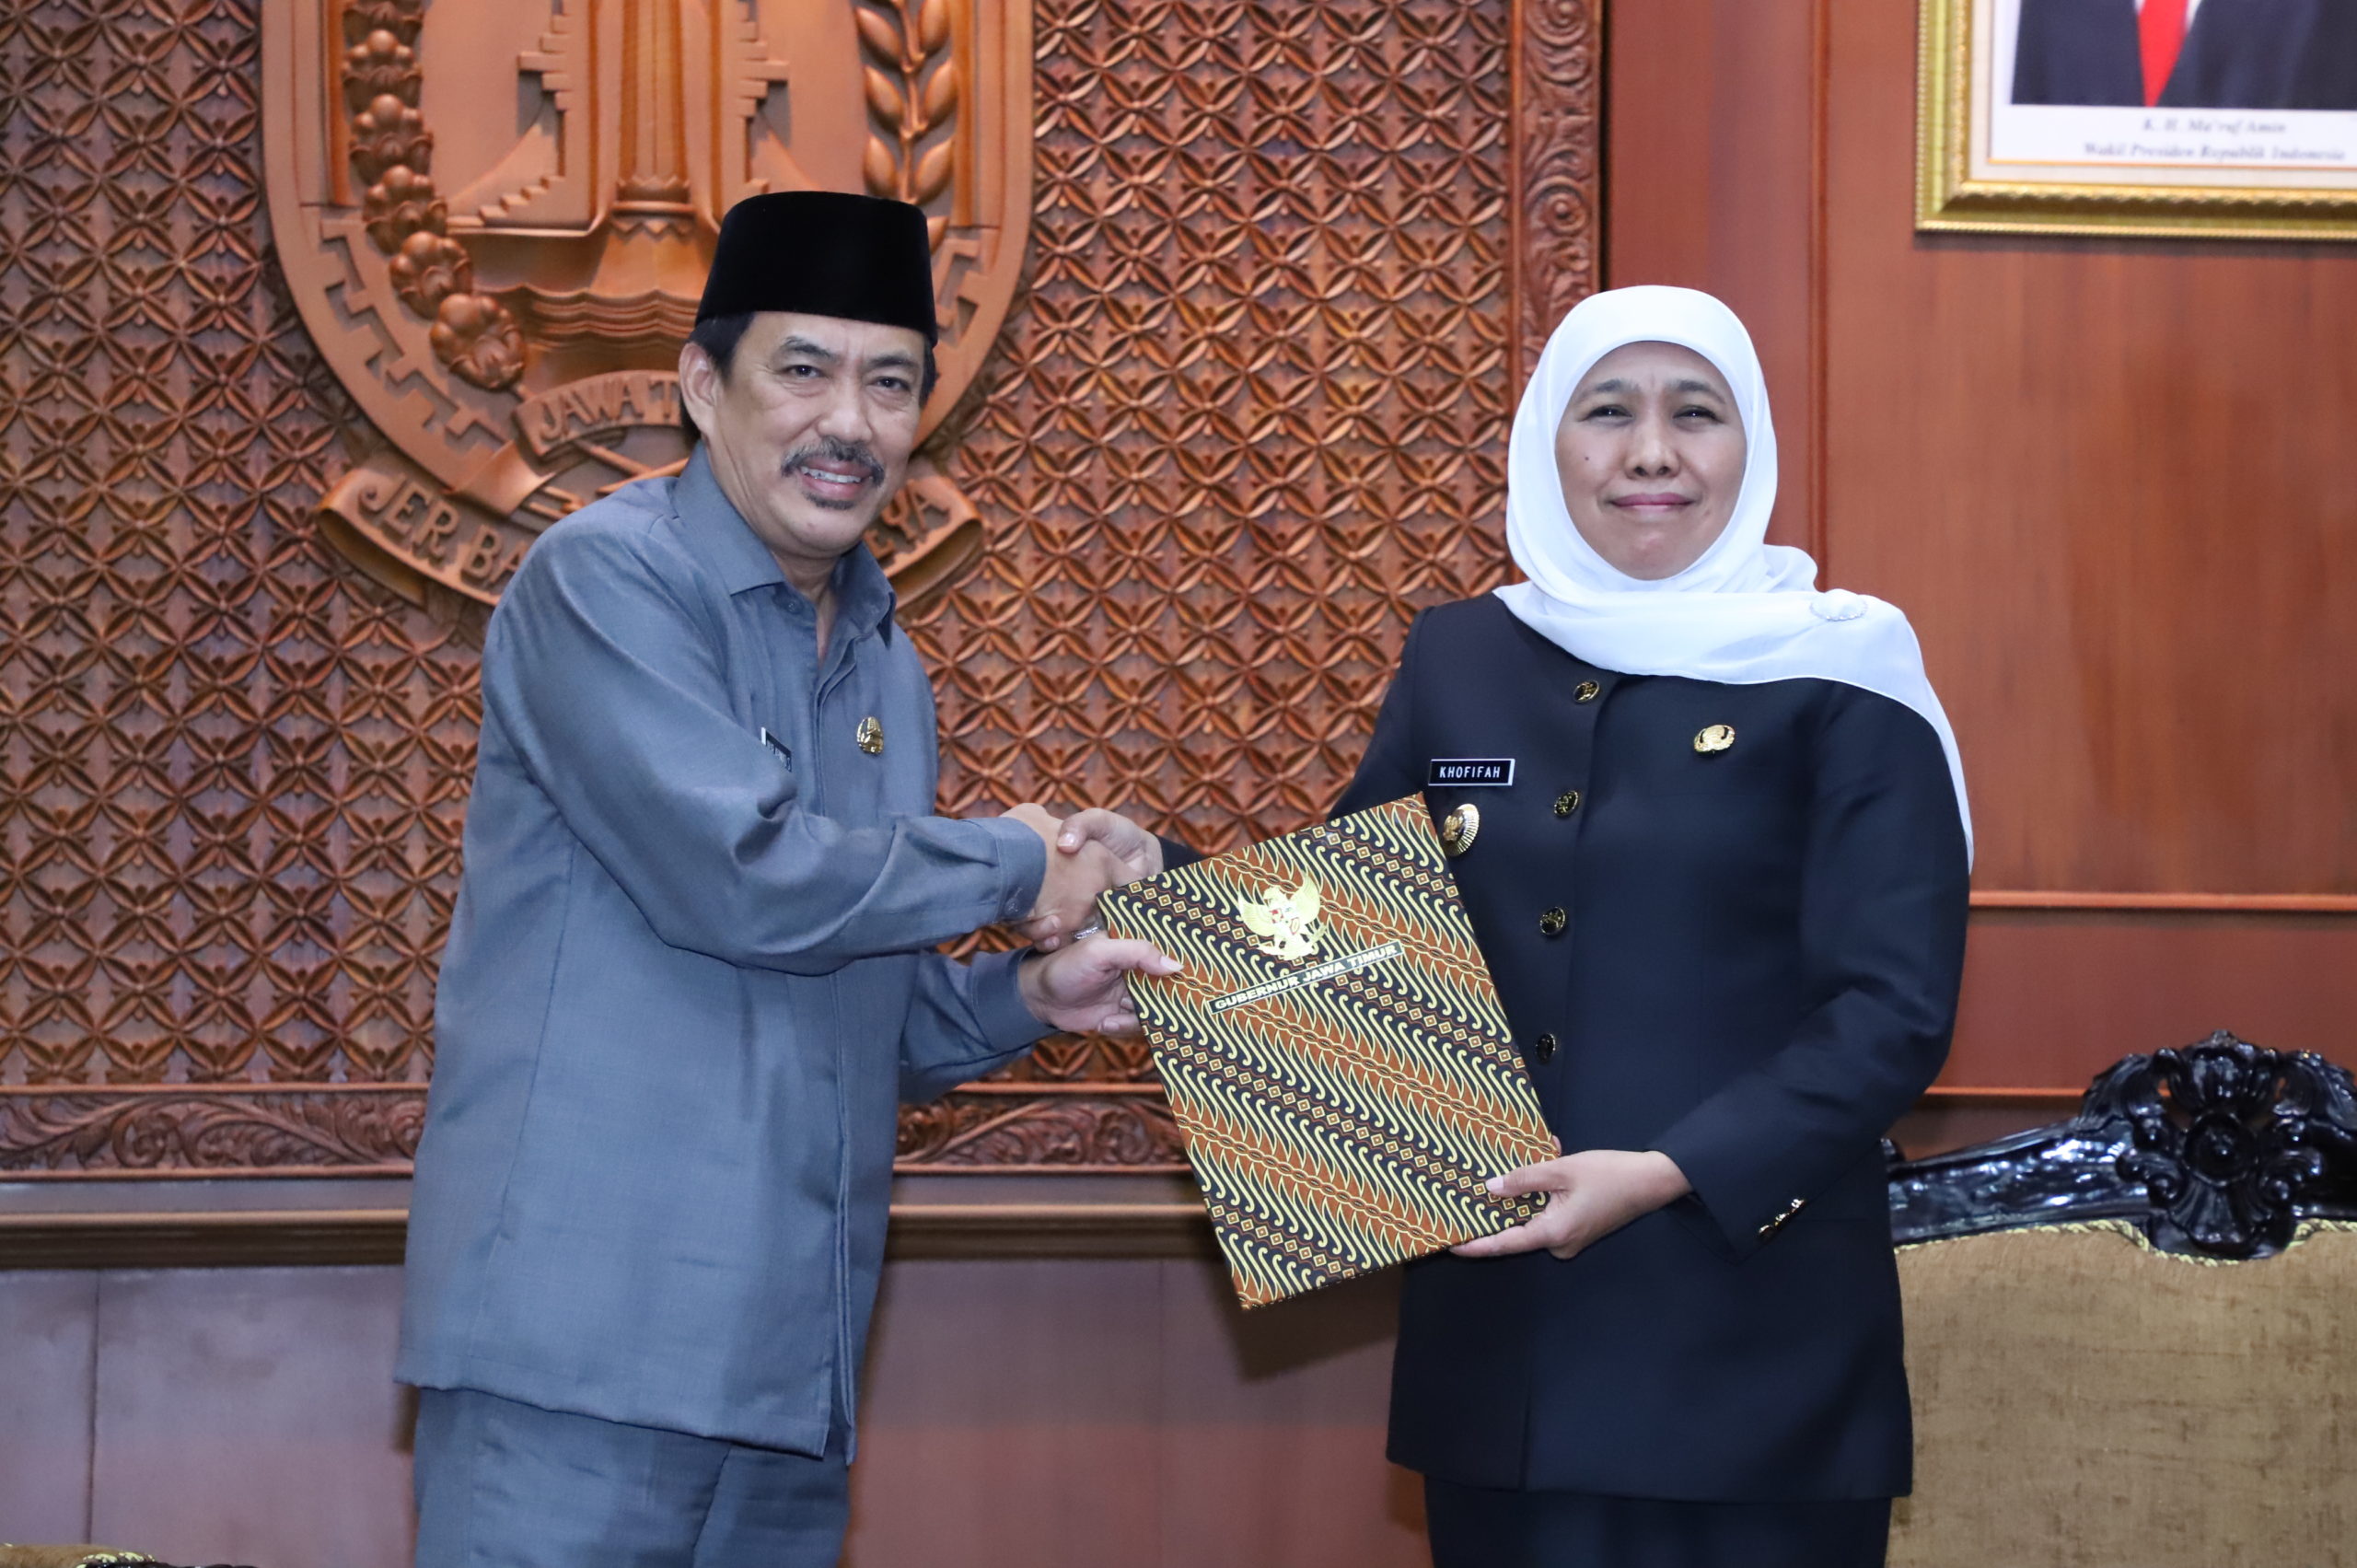 Wakil Bupati Sidoarjo Nur Ahmad Syaifuddin resmi melaksanakan tugas dan wewenang sebagai pelaksana tugas (Plt) Bupati Sidoarjo menggantikan Saiful Illah.